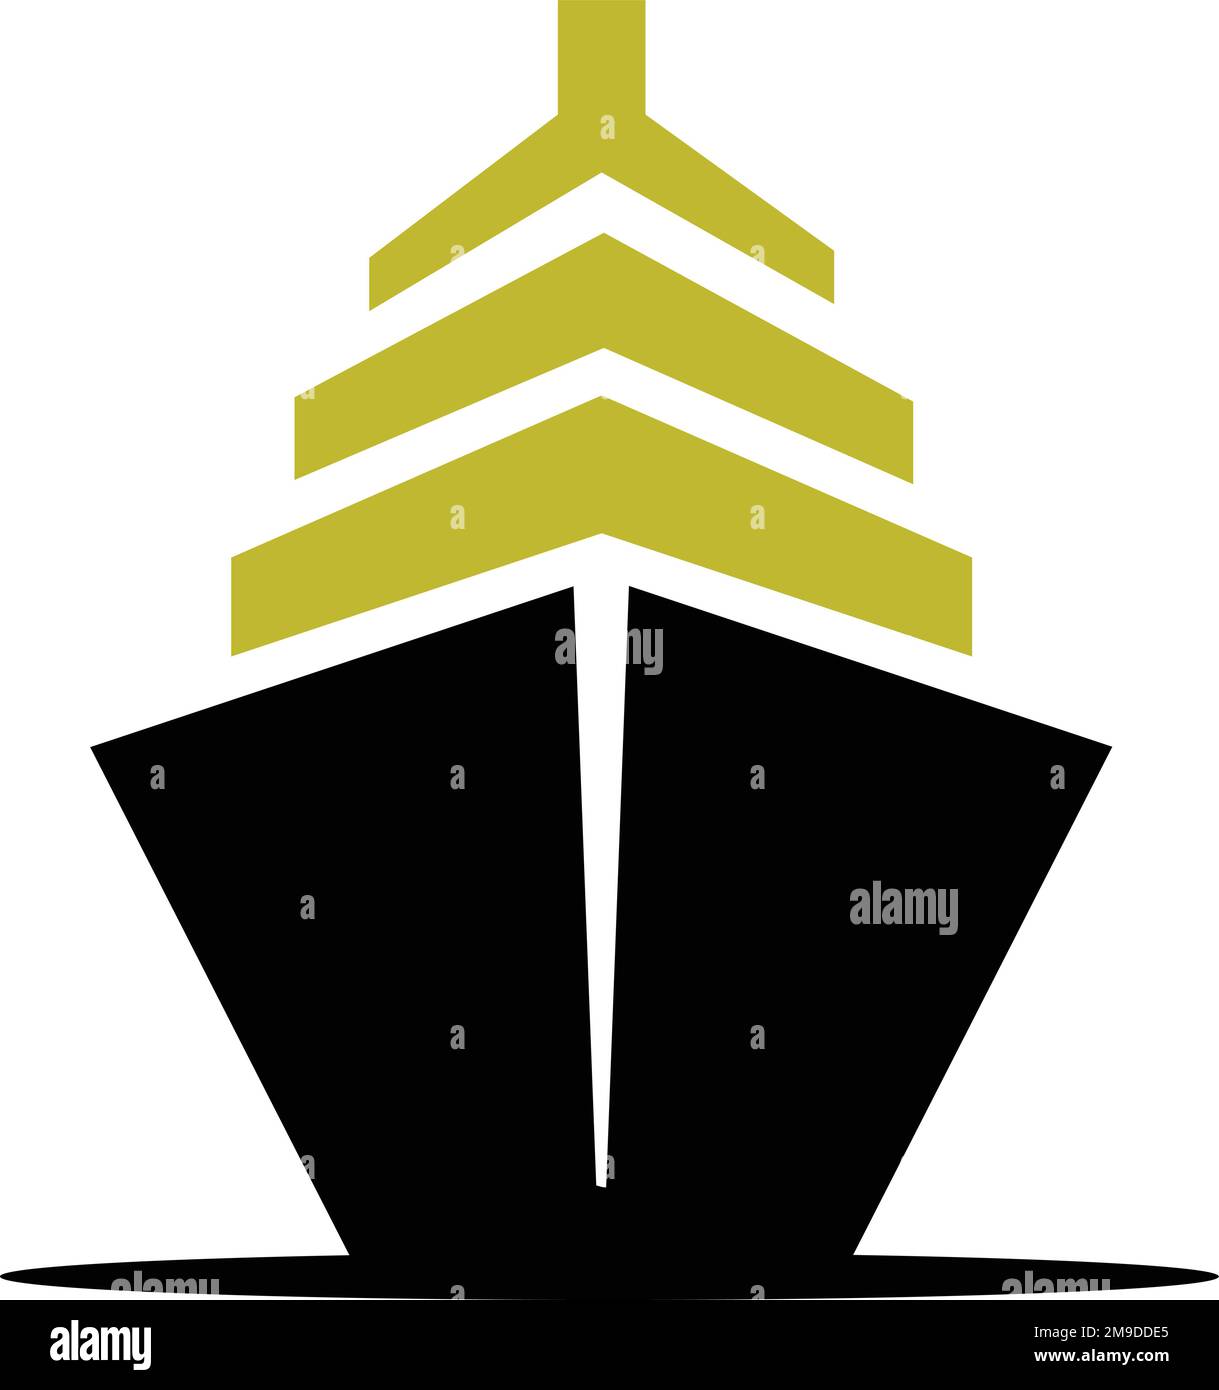 vector ship vector modern logo and icon design Stock Vector